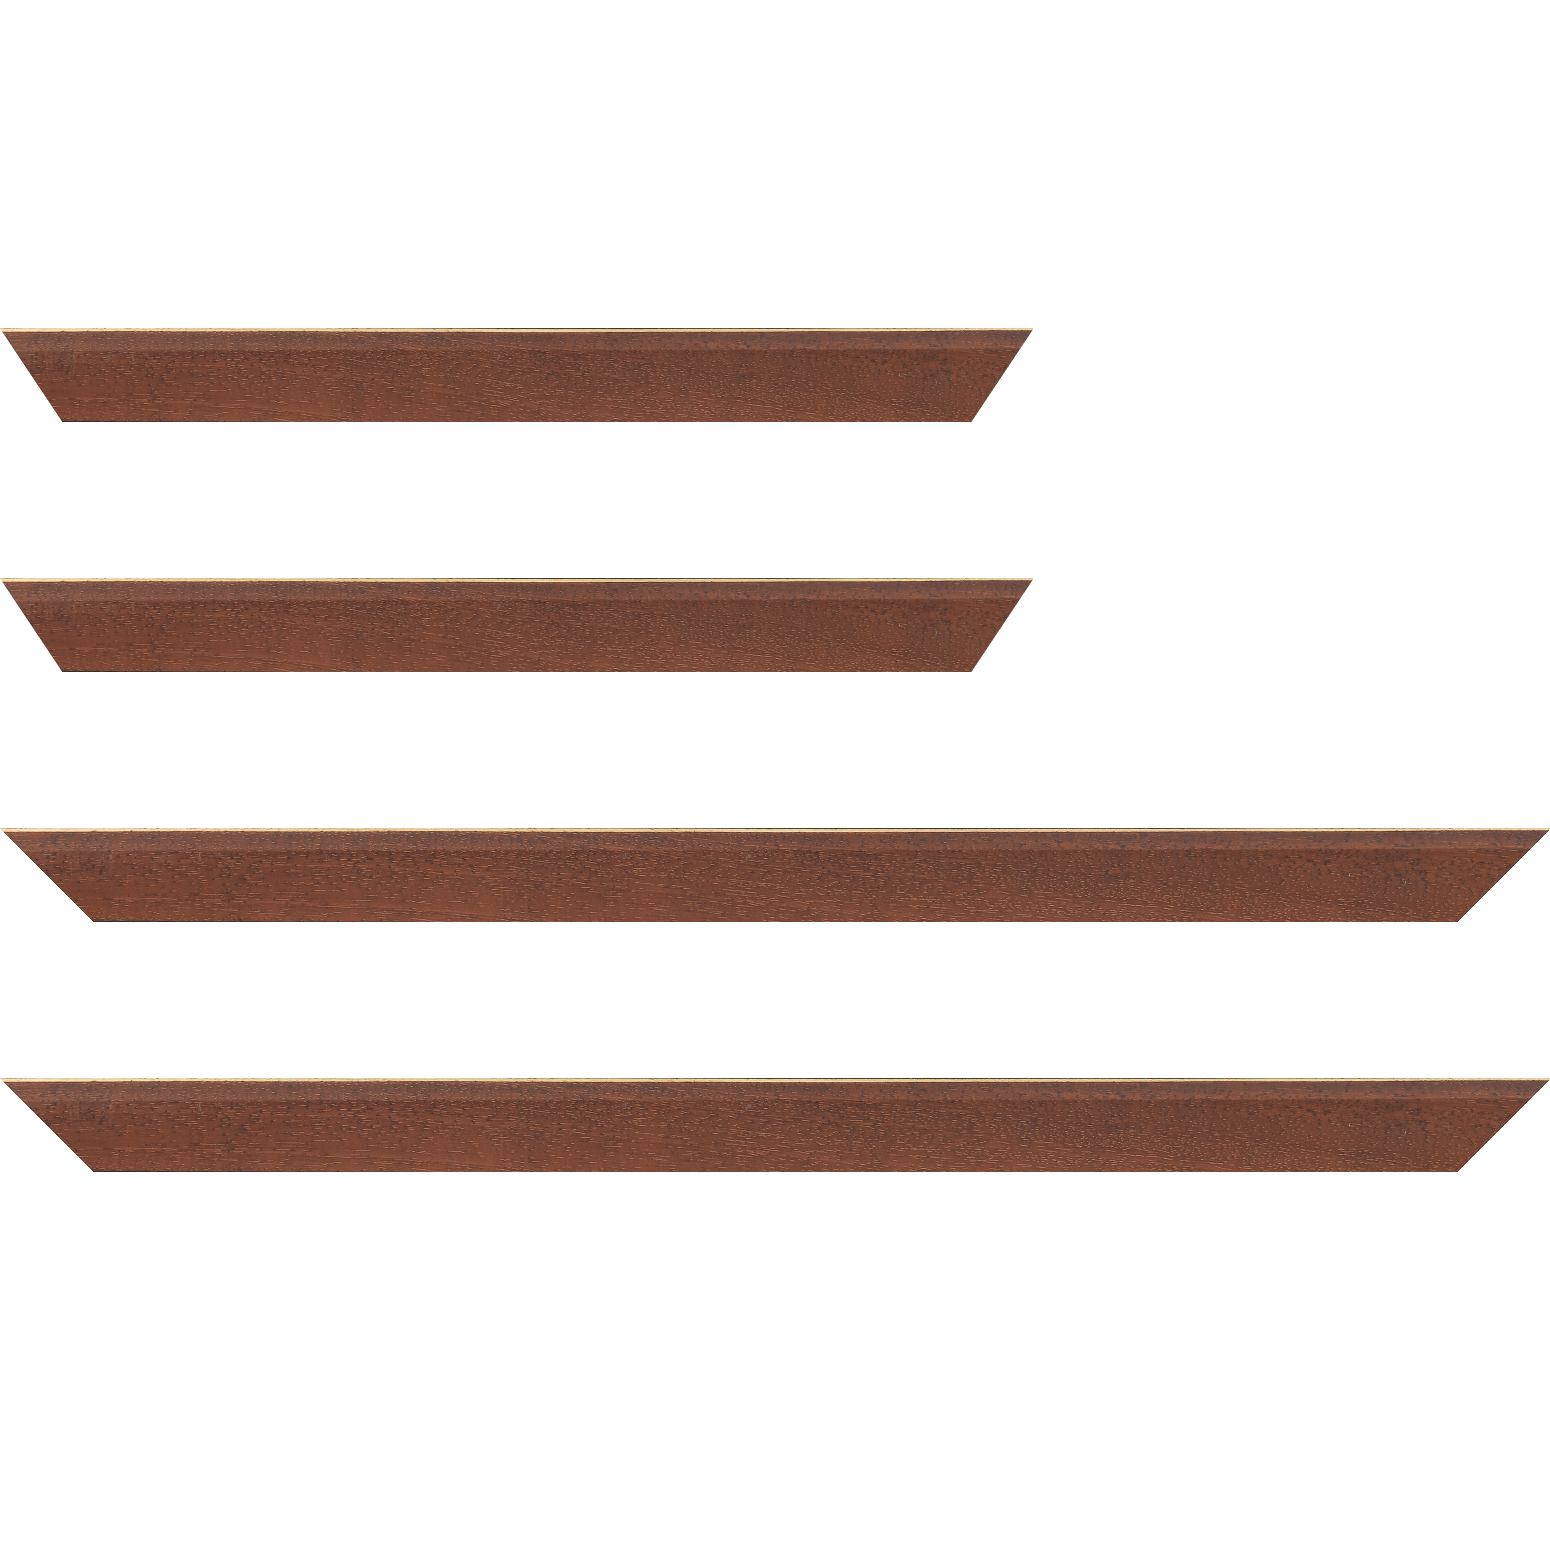 Baguette bois profil plat escalier largeur 3cm couleur marron miel satiné filet créme extérieur - 50x60